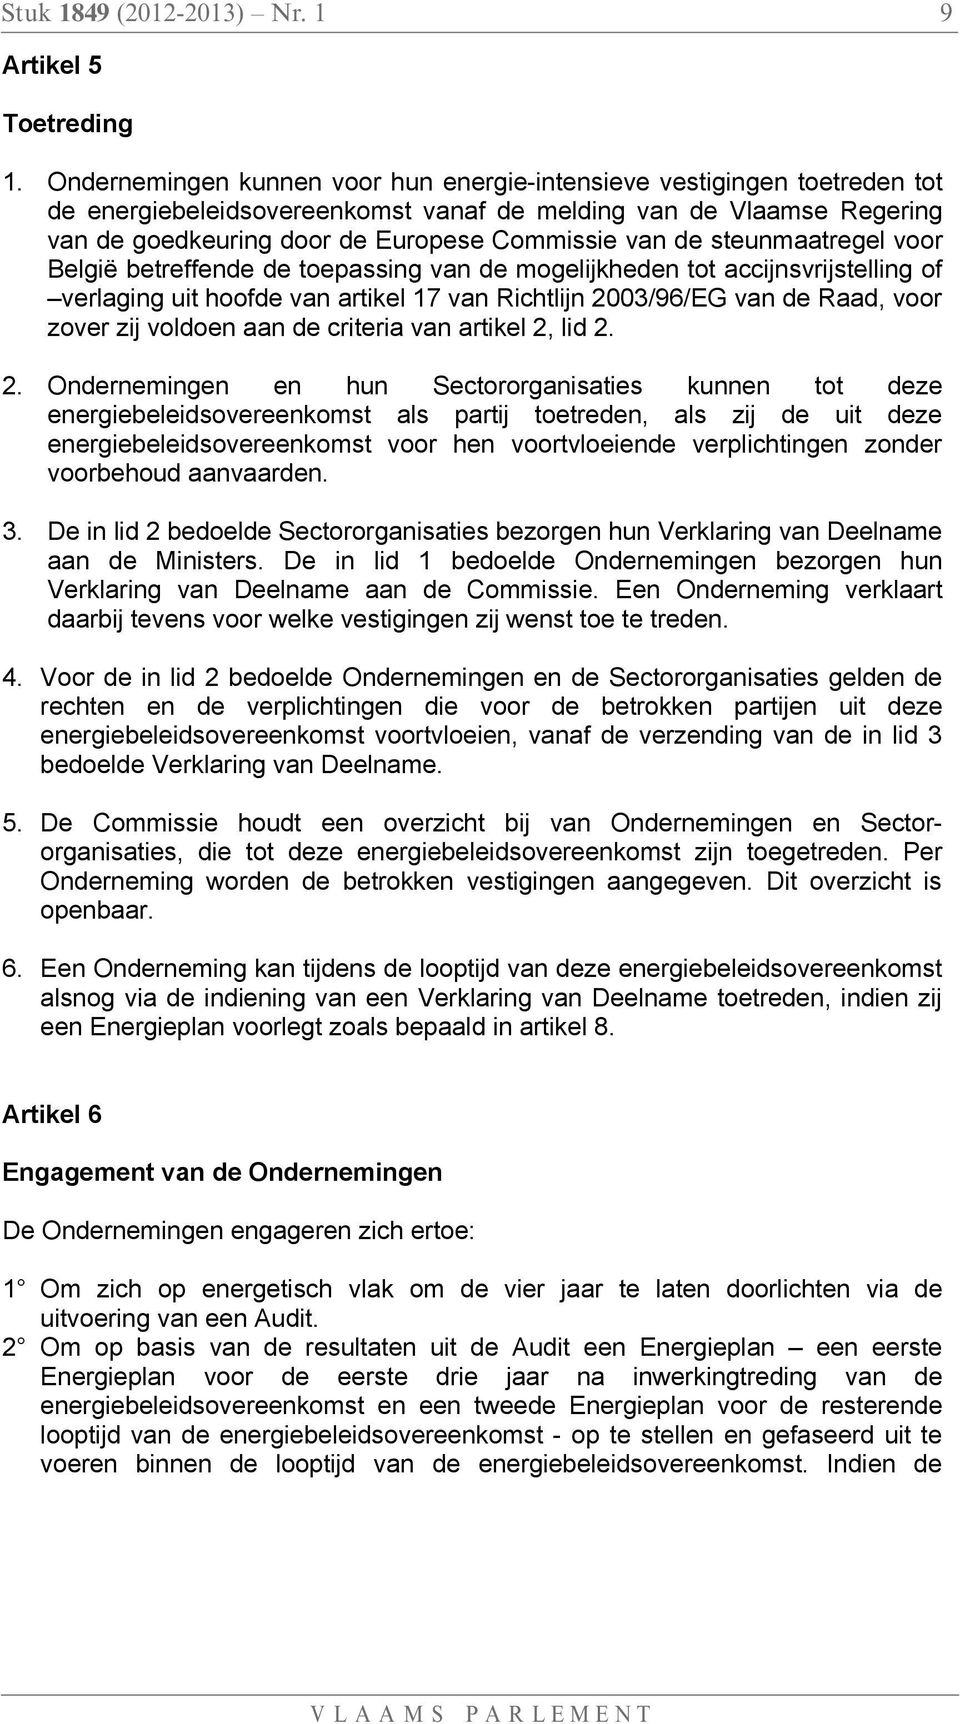 steunmaatregel voor België betreffende de toepassing van de mogelijkheden tot accijnsvrijstelling of verlaging uit hoofde van artikel 17 van Richtlijn 2003/96/EG van de Raad, voor zover zij voldoen